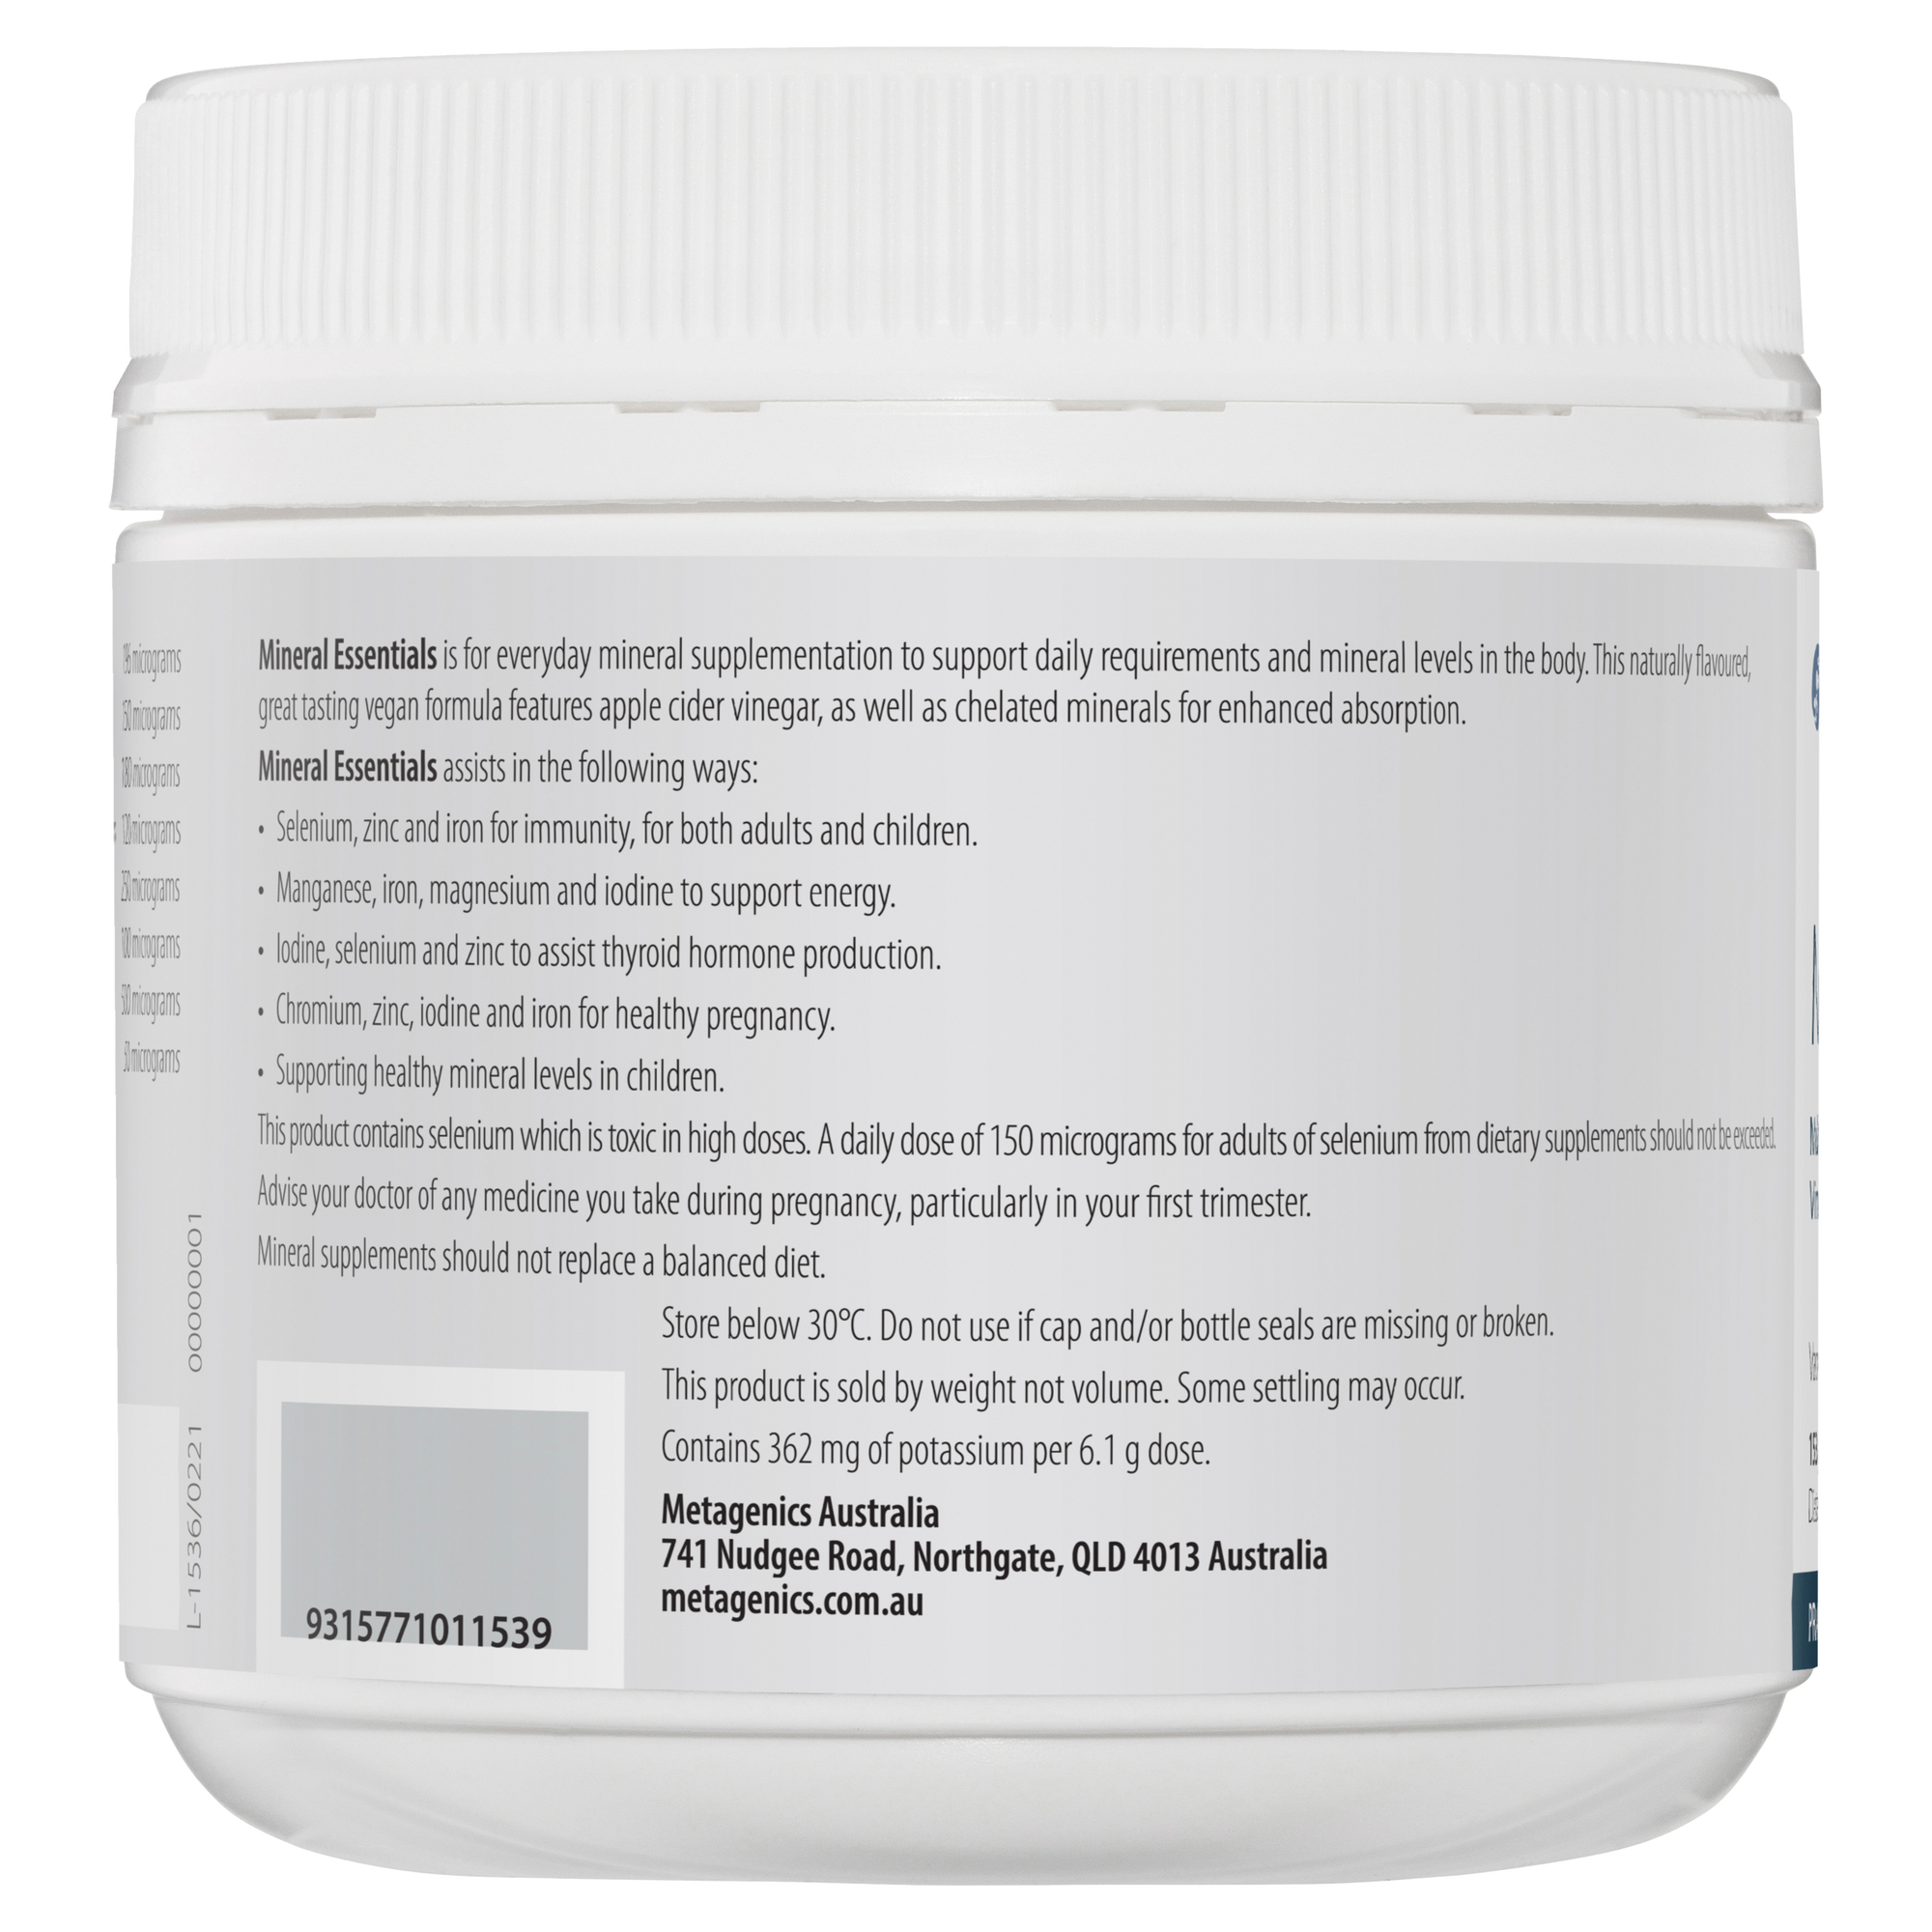 Metagenics Mineral Essentials Oral Powder Vanilla Flavour 153 g